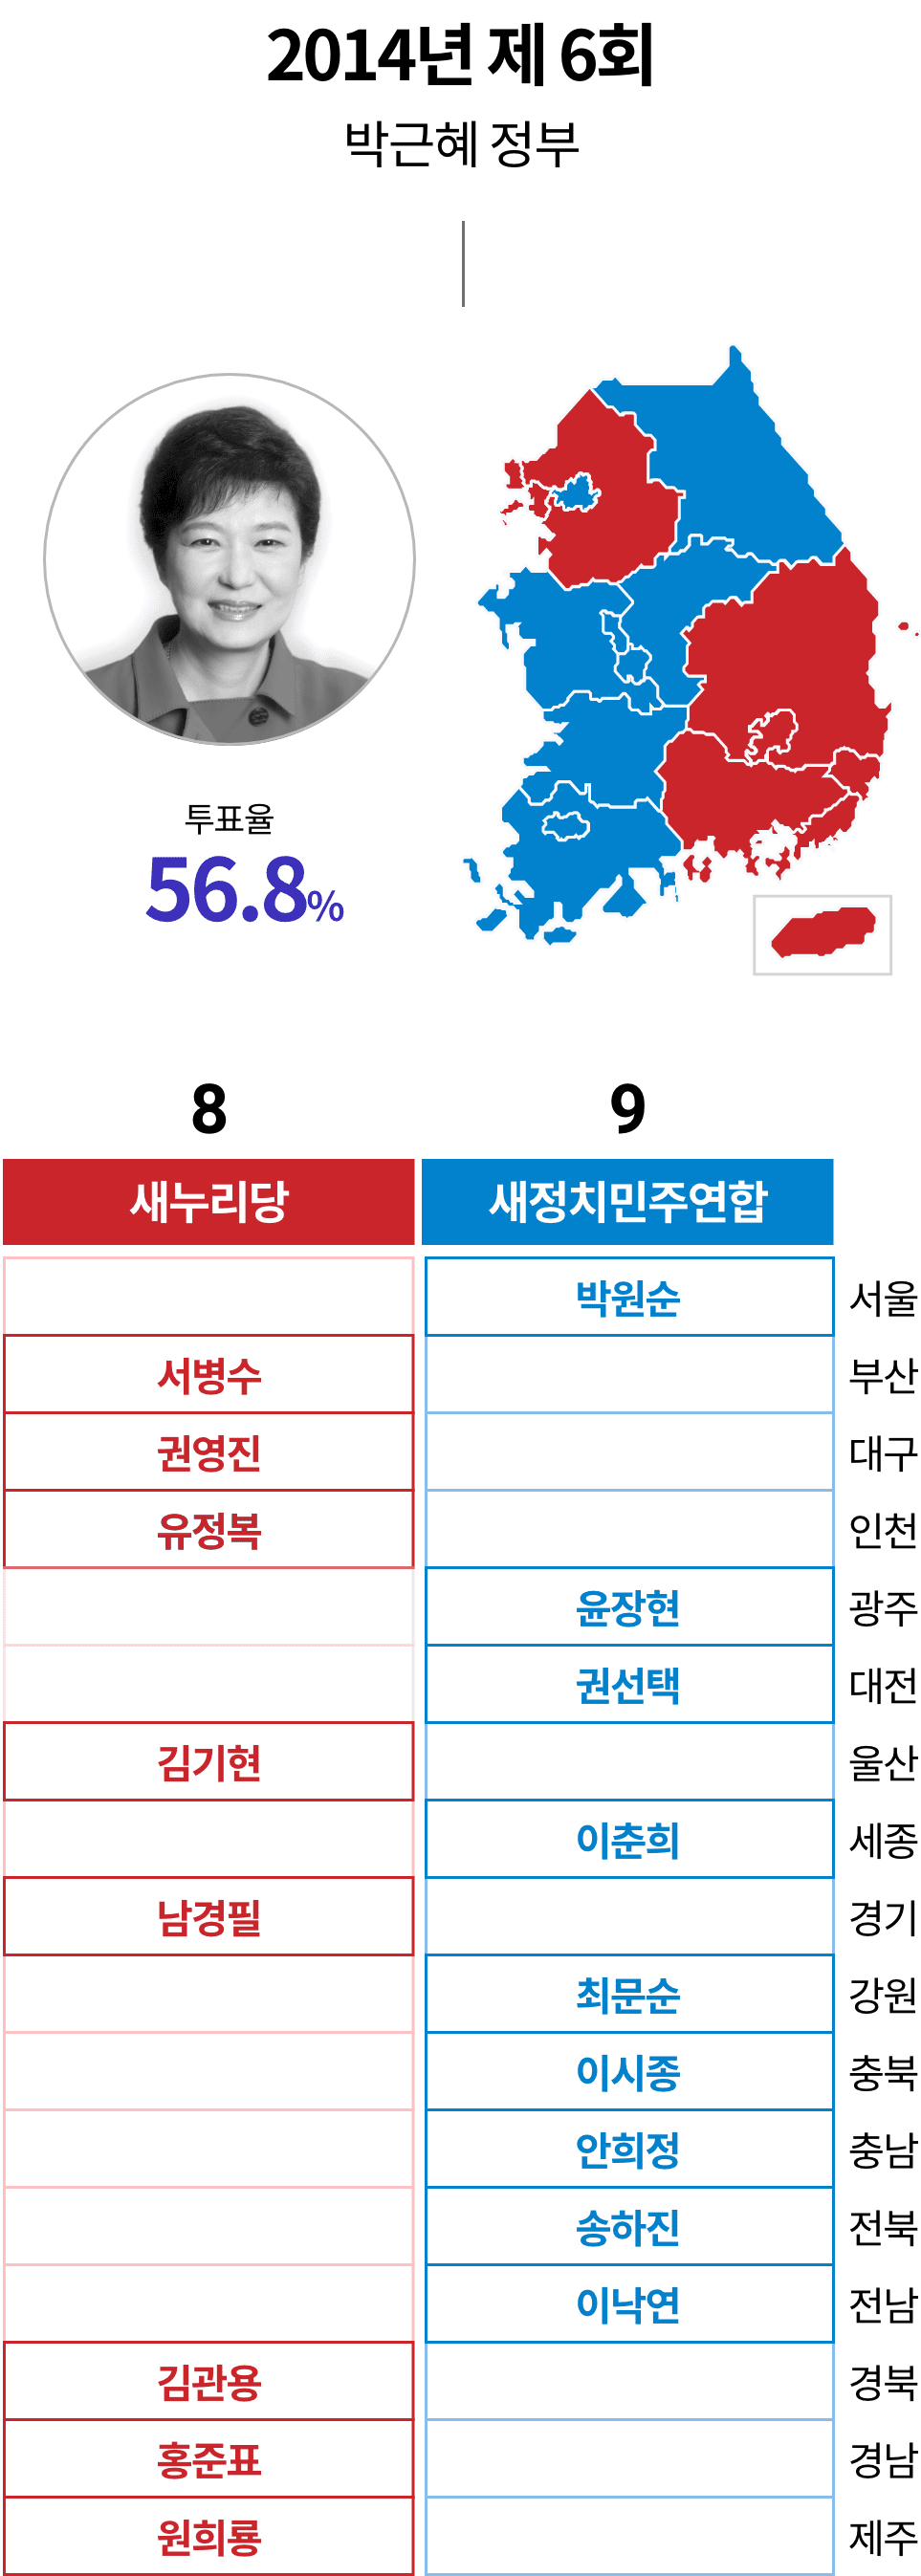 2014년 제6회 박근혜정부 투표율 56.8%